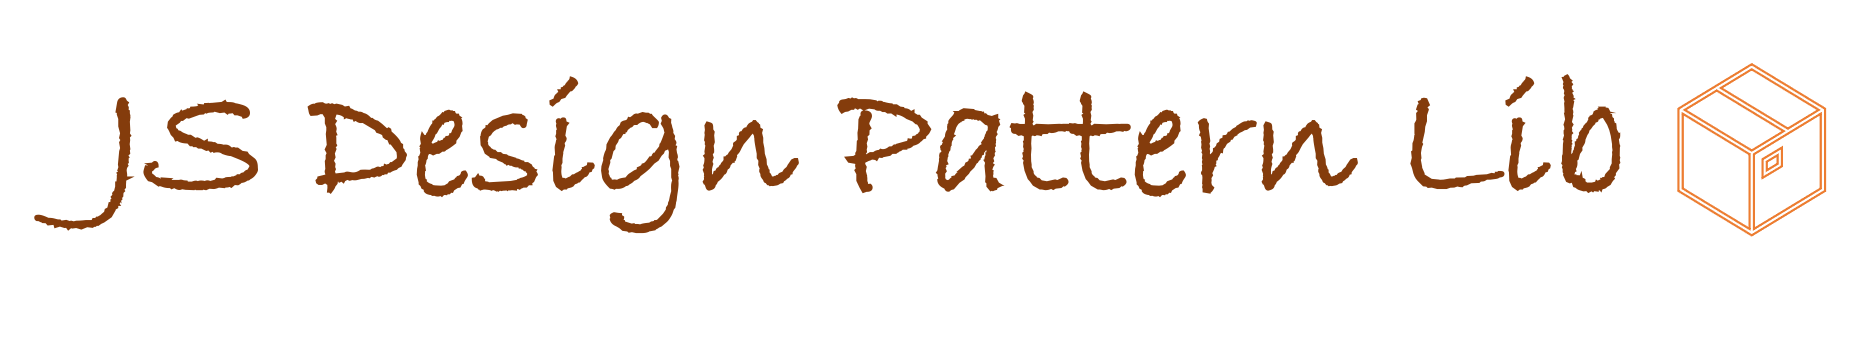 Pattern Lib Banner